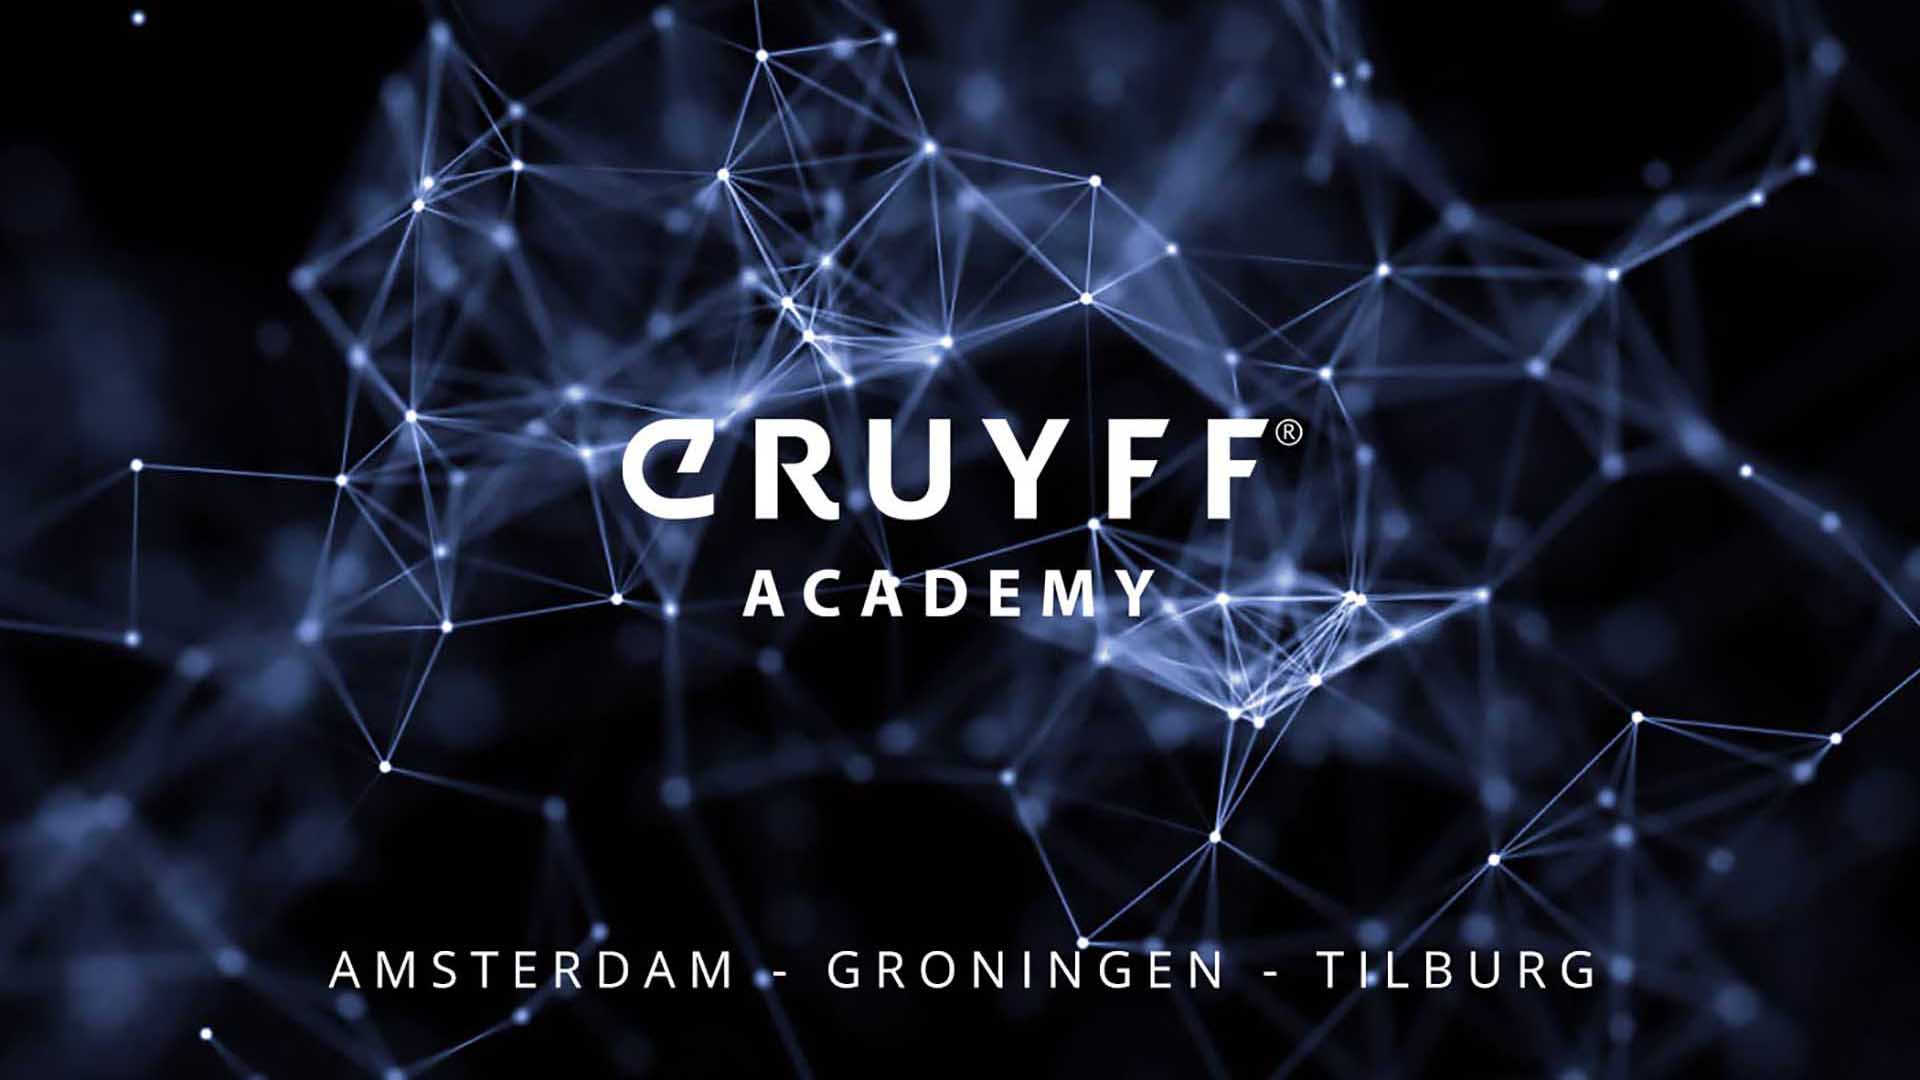 Johan Cruyff Academy werkt aan curriculuminnovatie in Barcelona